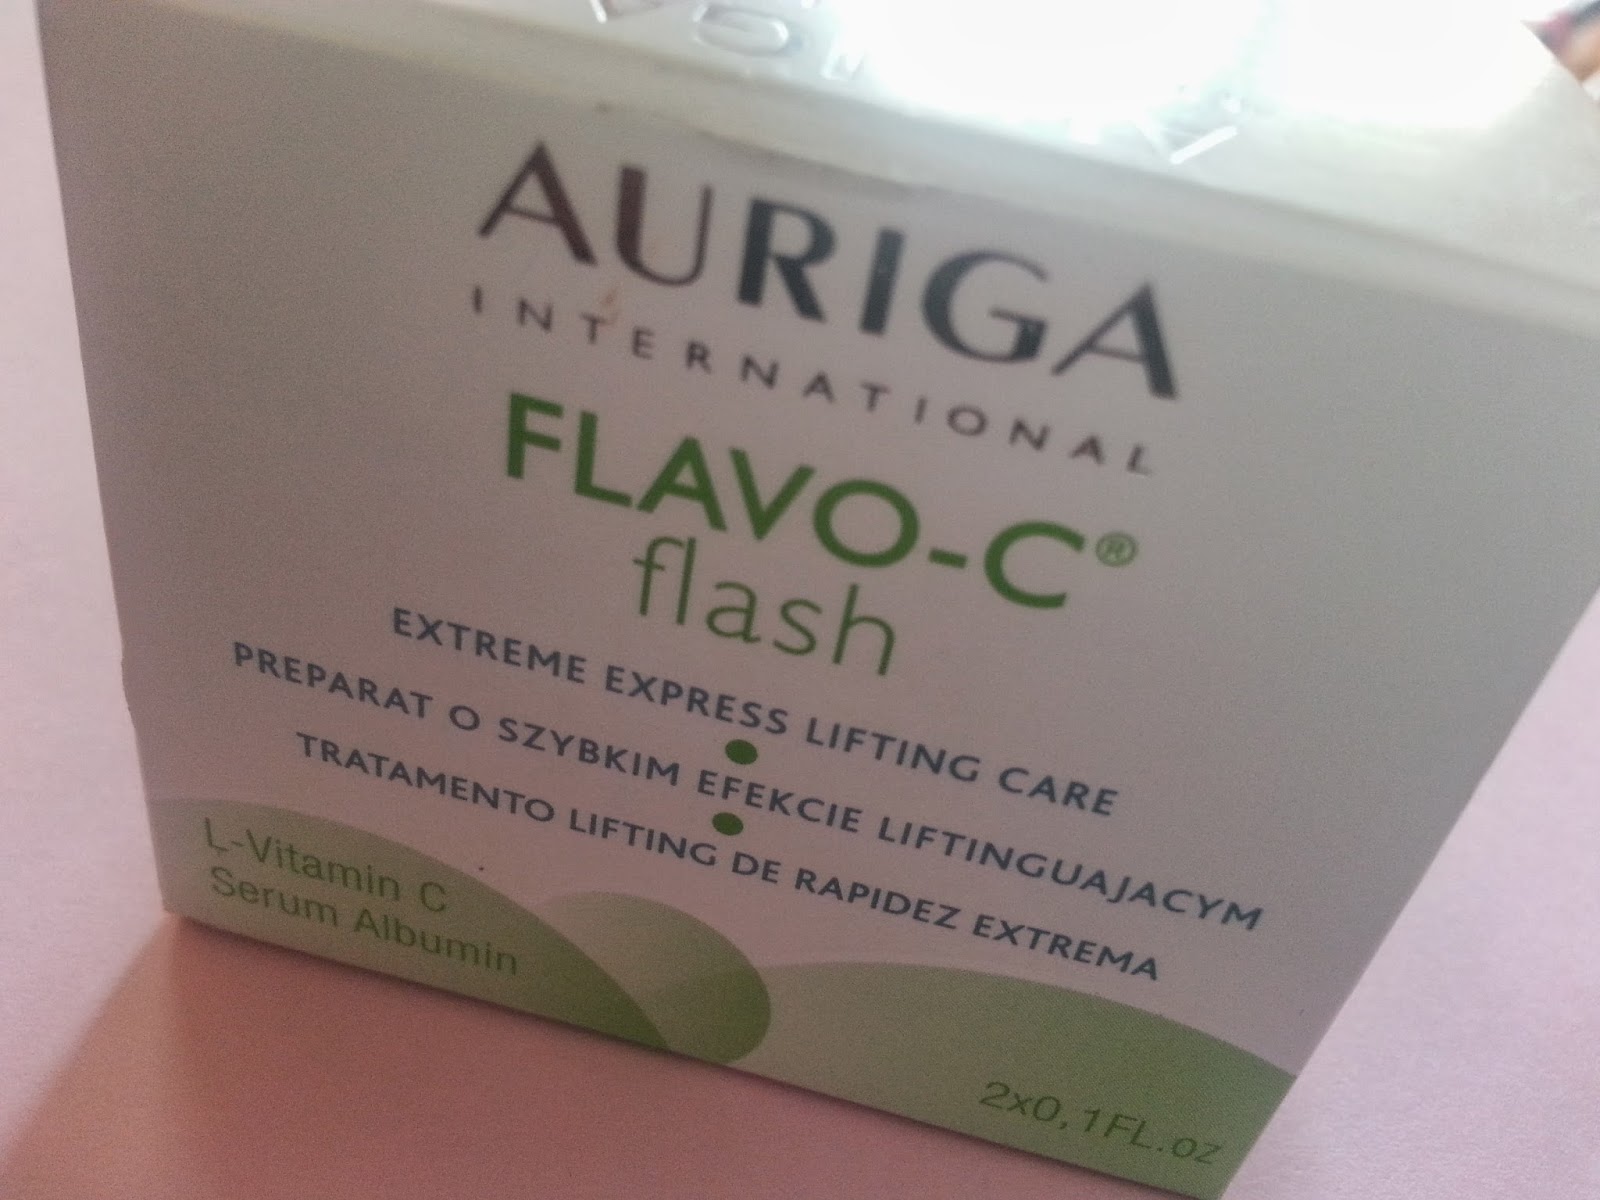 AURIGA FLAVO-C Flash – Serum błyskawicznie liftingujące